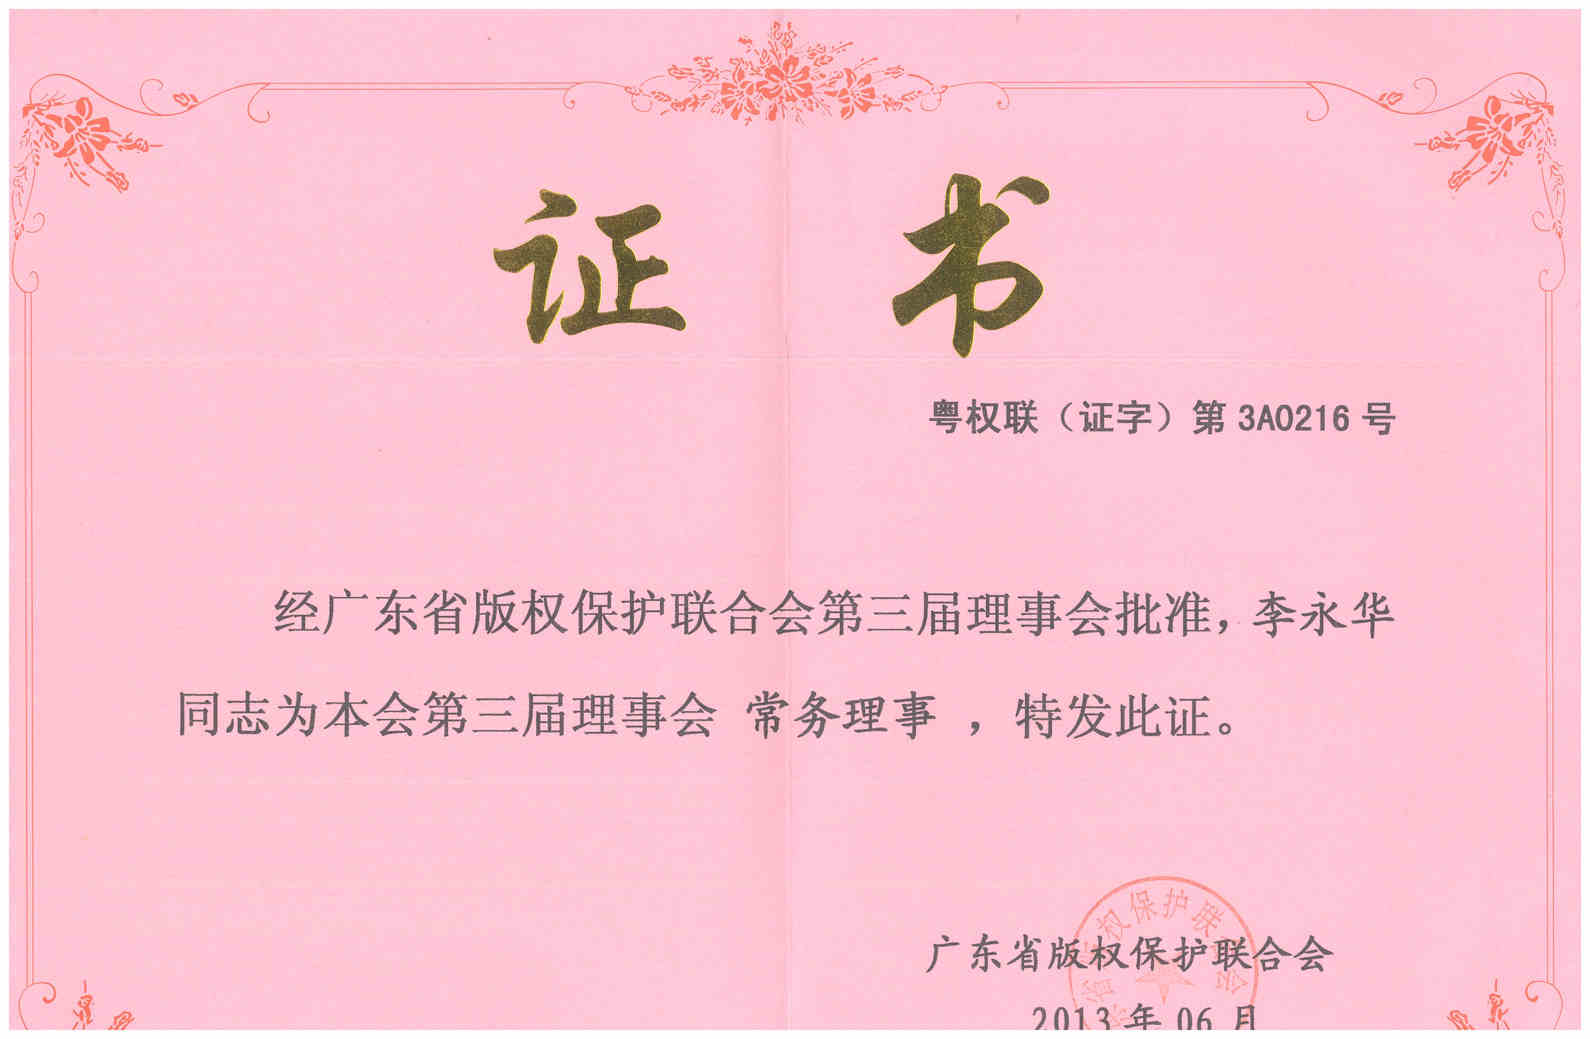 2013年6月 李永华当选广东省版权保护联合会第三届理事会常务理事